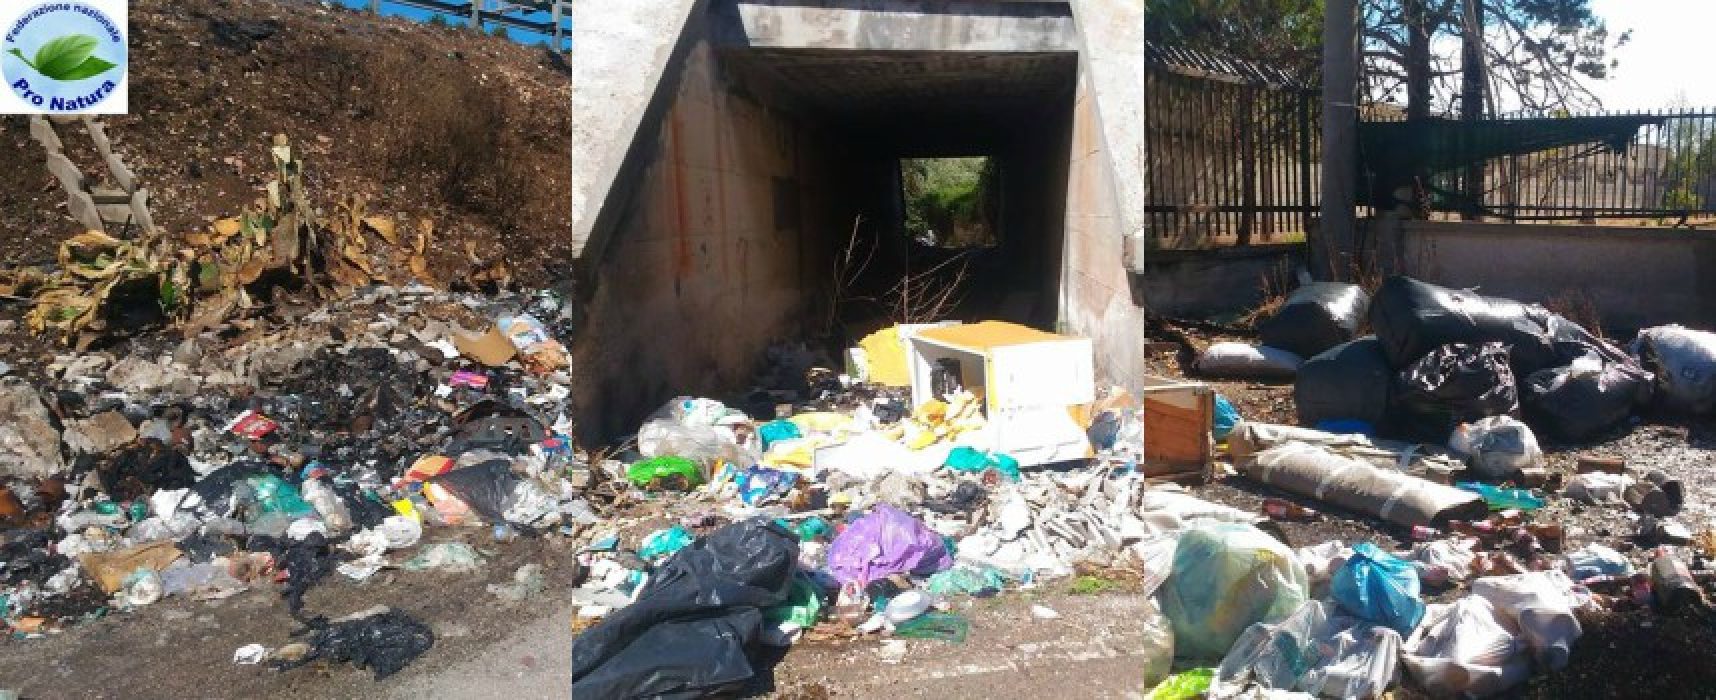 Abbandono rifiuti, Mauro Sasso: “Situazione peggiorata, intere vie invase da spazzatura” / FOTO